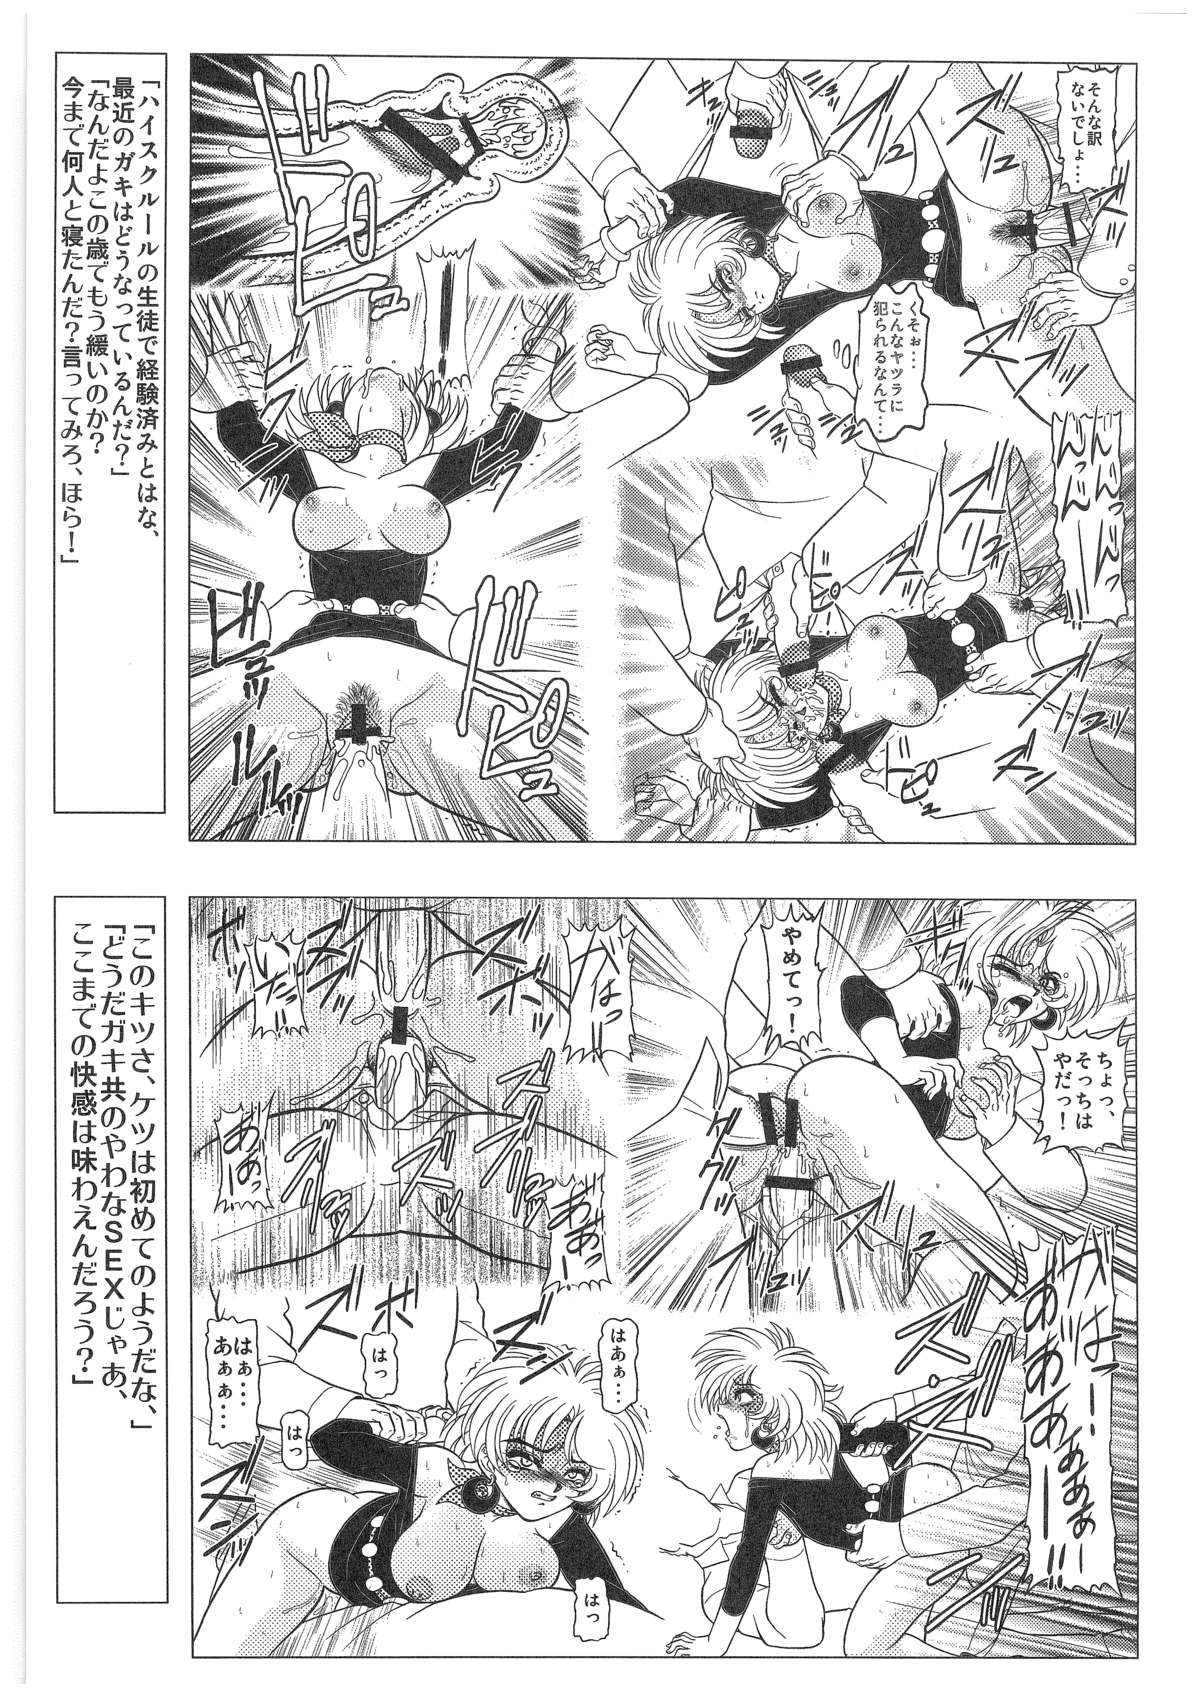 [Dakimakuma, Jingai Makyou Club (WING☆BIRD)] CHARA EMU W☆B010 GONDAM 008 ZZ-W-F91 (Various) page 20 full